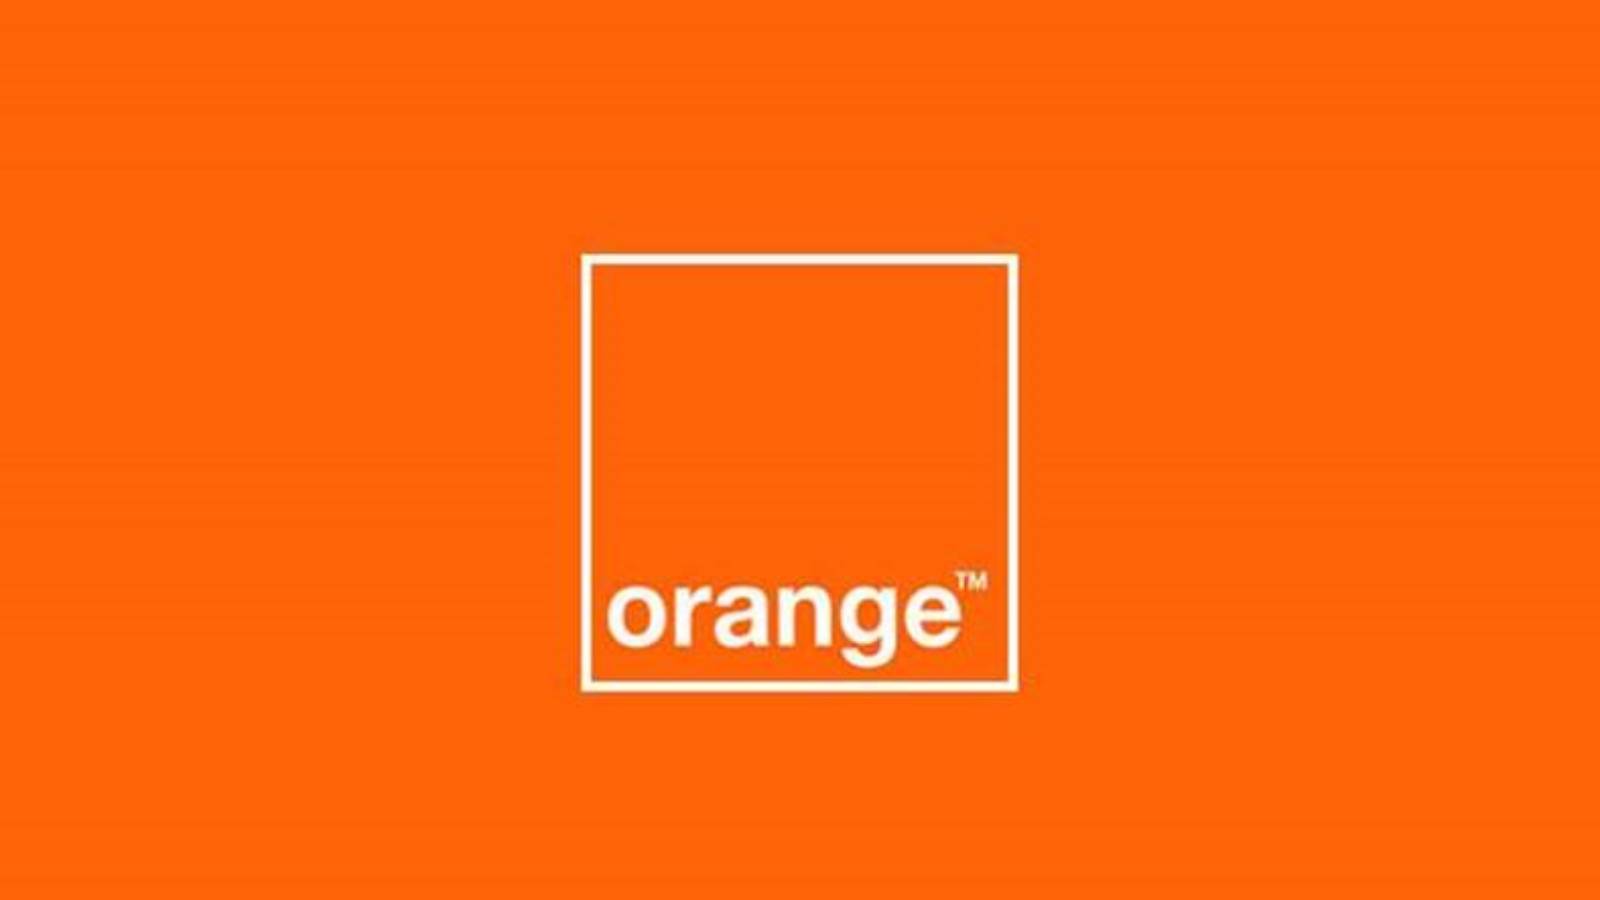 aplicación de juegos gratis naranja